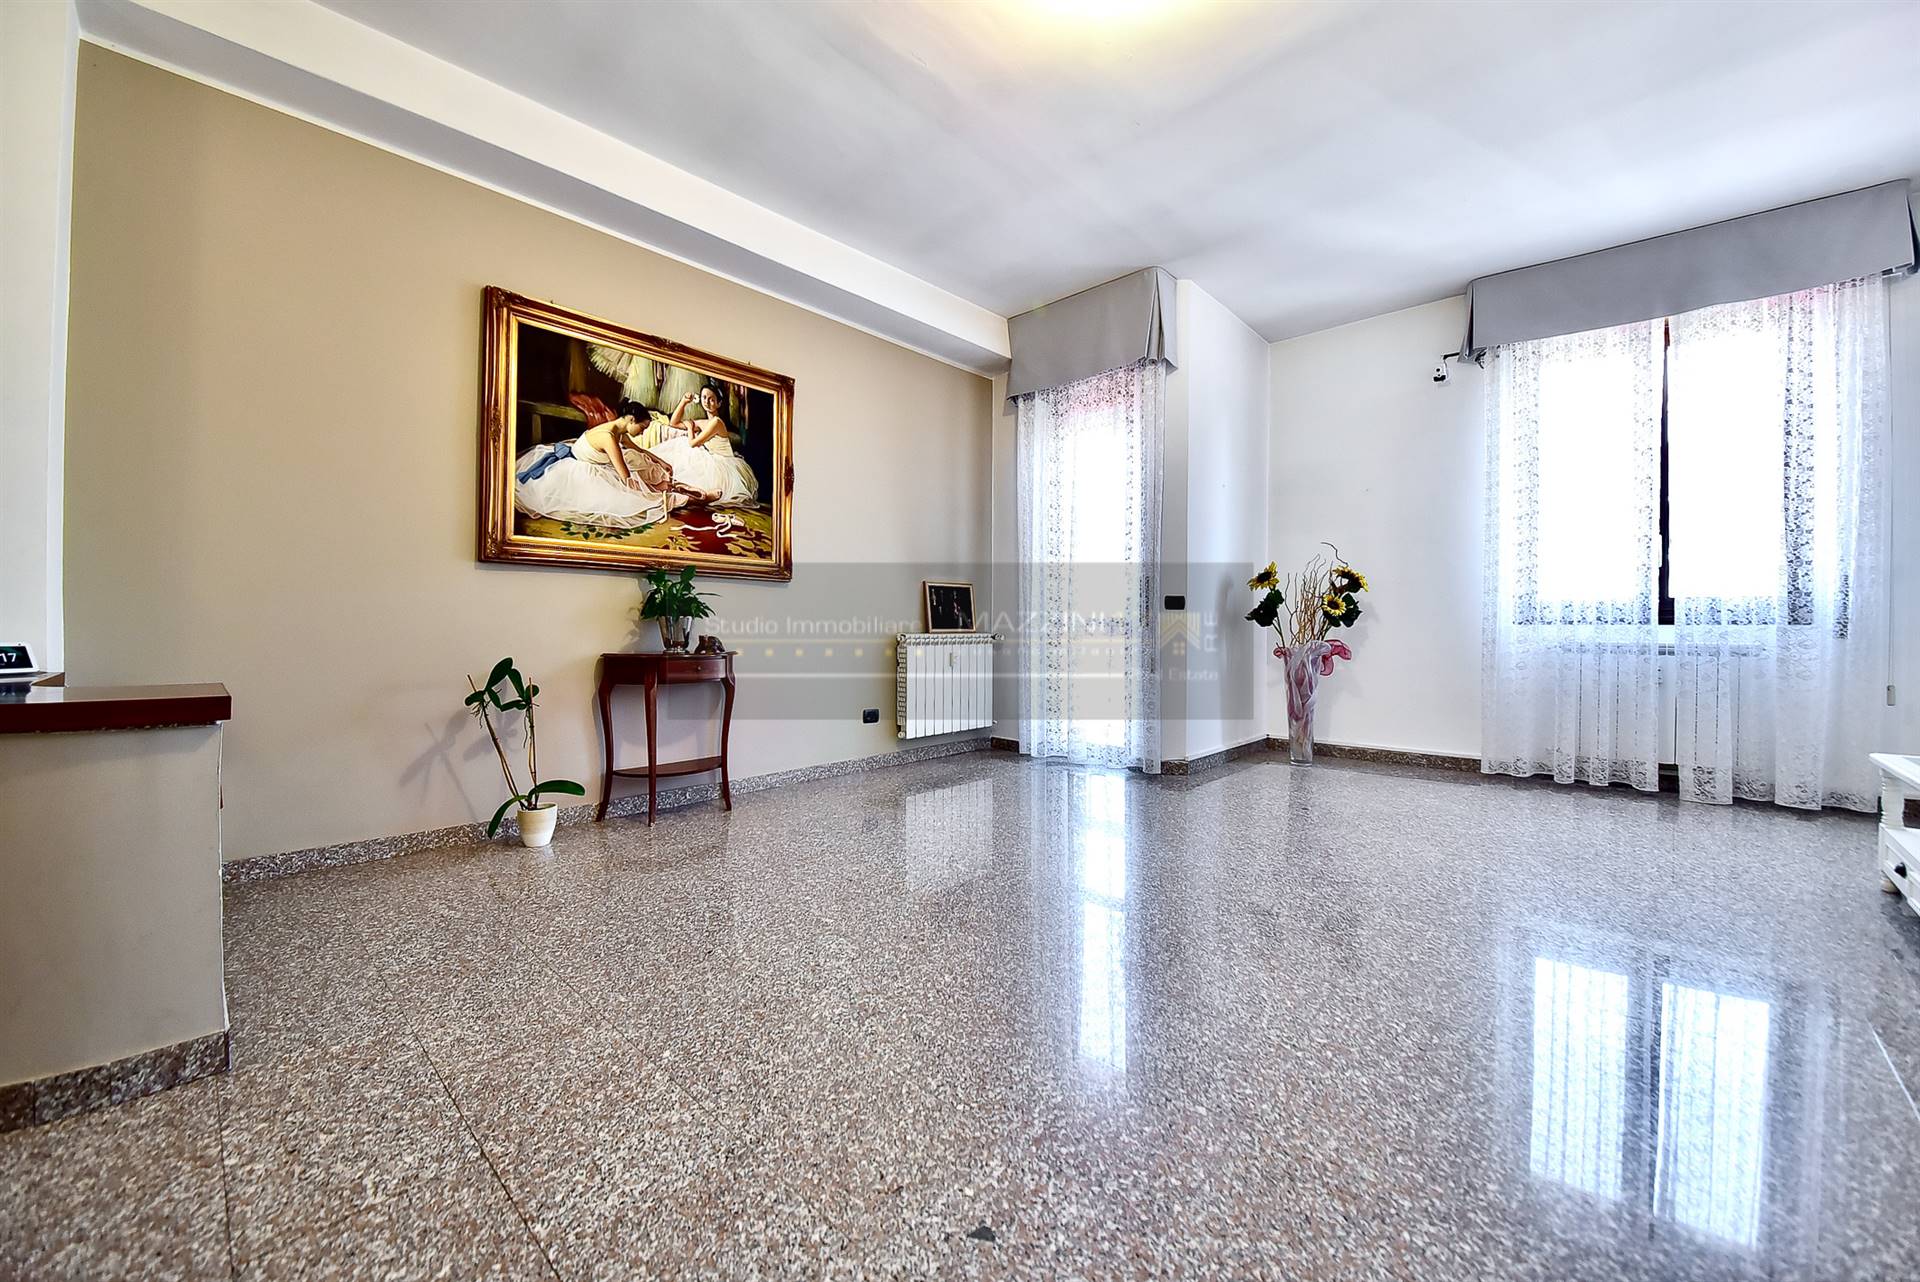 Appartamento in vendita a Bresso, 3 locali, prezzo € 168.000 | PortaleAgenzieImmobiliari.it